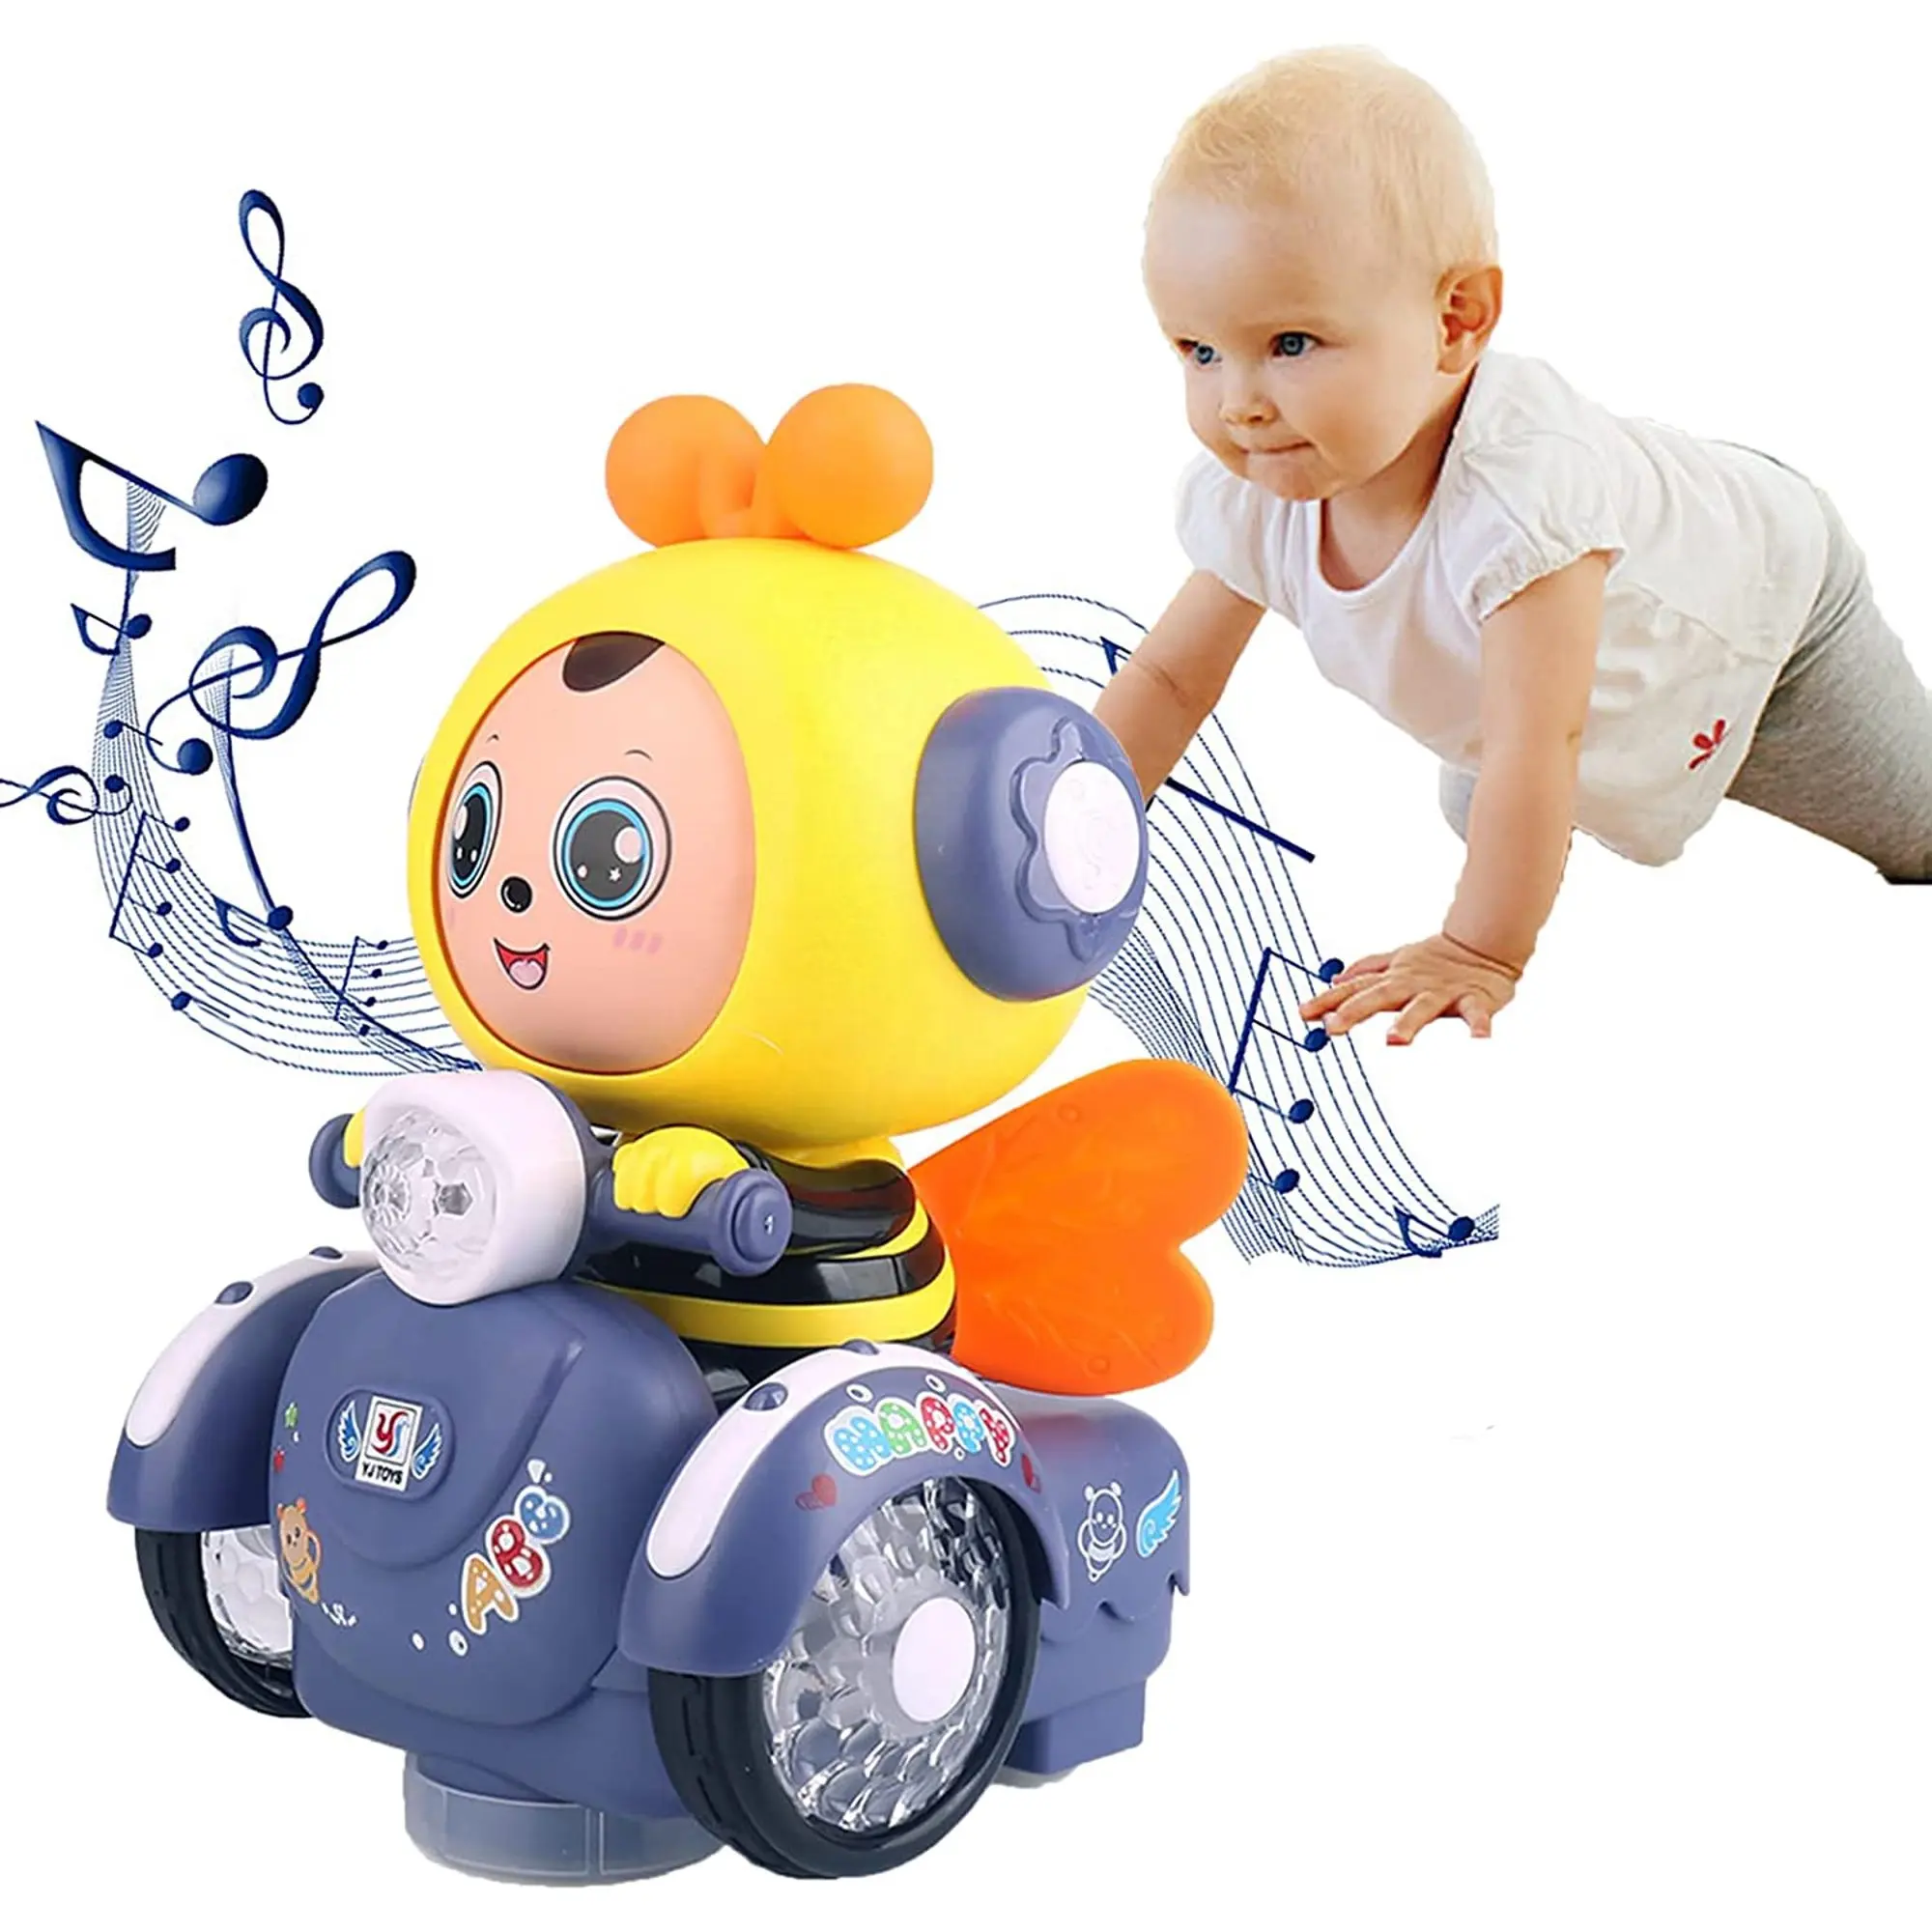 Giocattolo di danza elettrica del Robot dell'ape di musica interattiva per i bambini regalo educativo divertente del giocattolo dell'animale domestico per i ragazzi e le ragazze dai 3 ai 9 anni